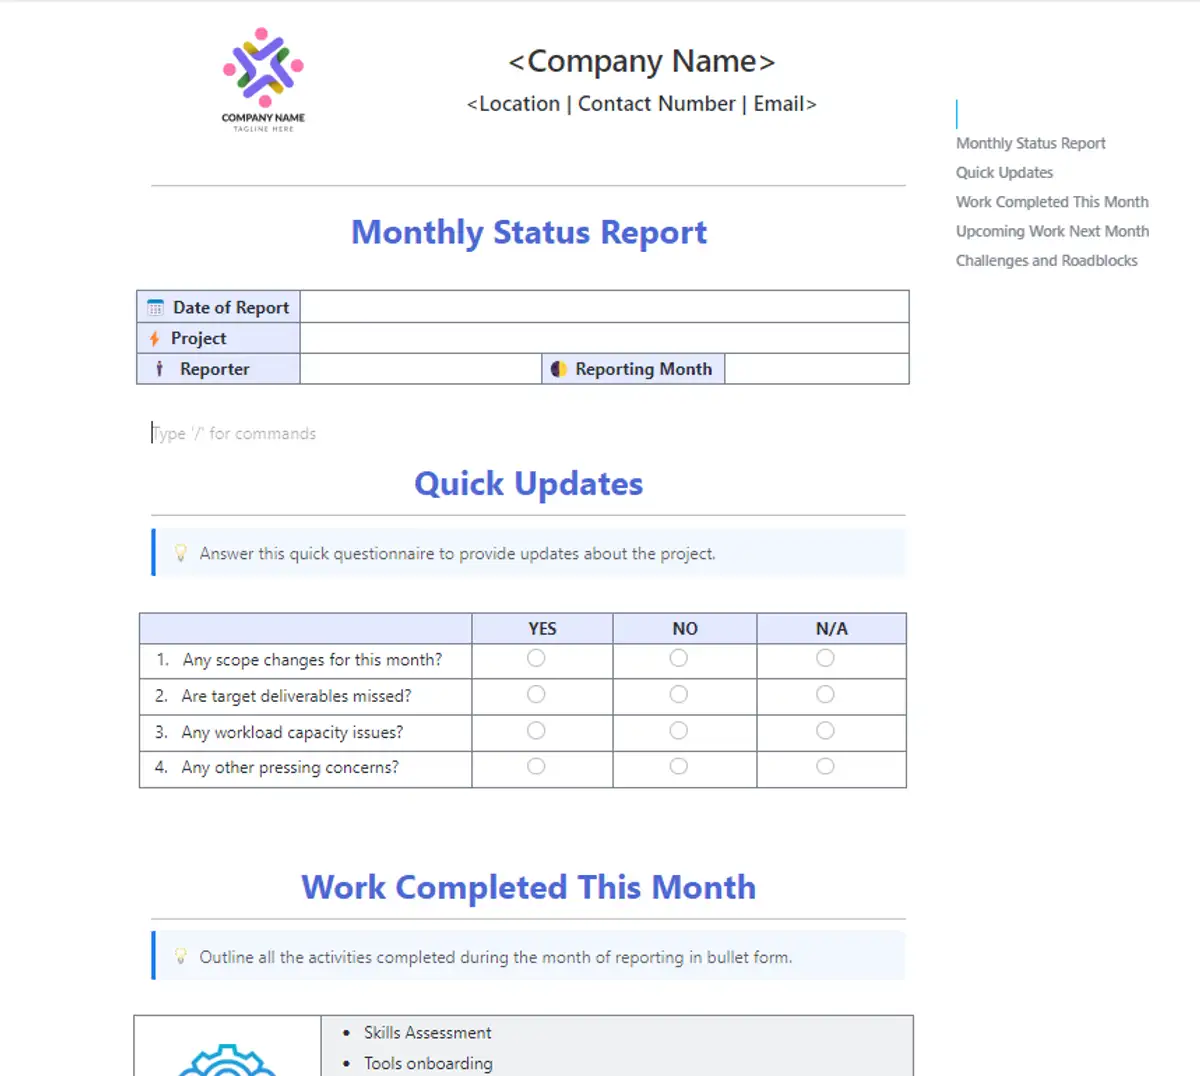 Śledź postępy projektów swojej firmy dzięki szablonowi miesięcznego raportu biznesowego ClickUp